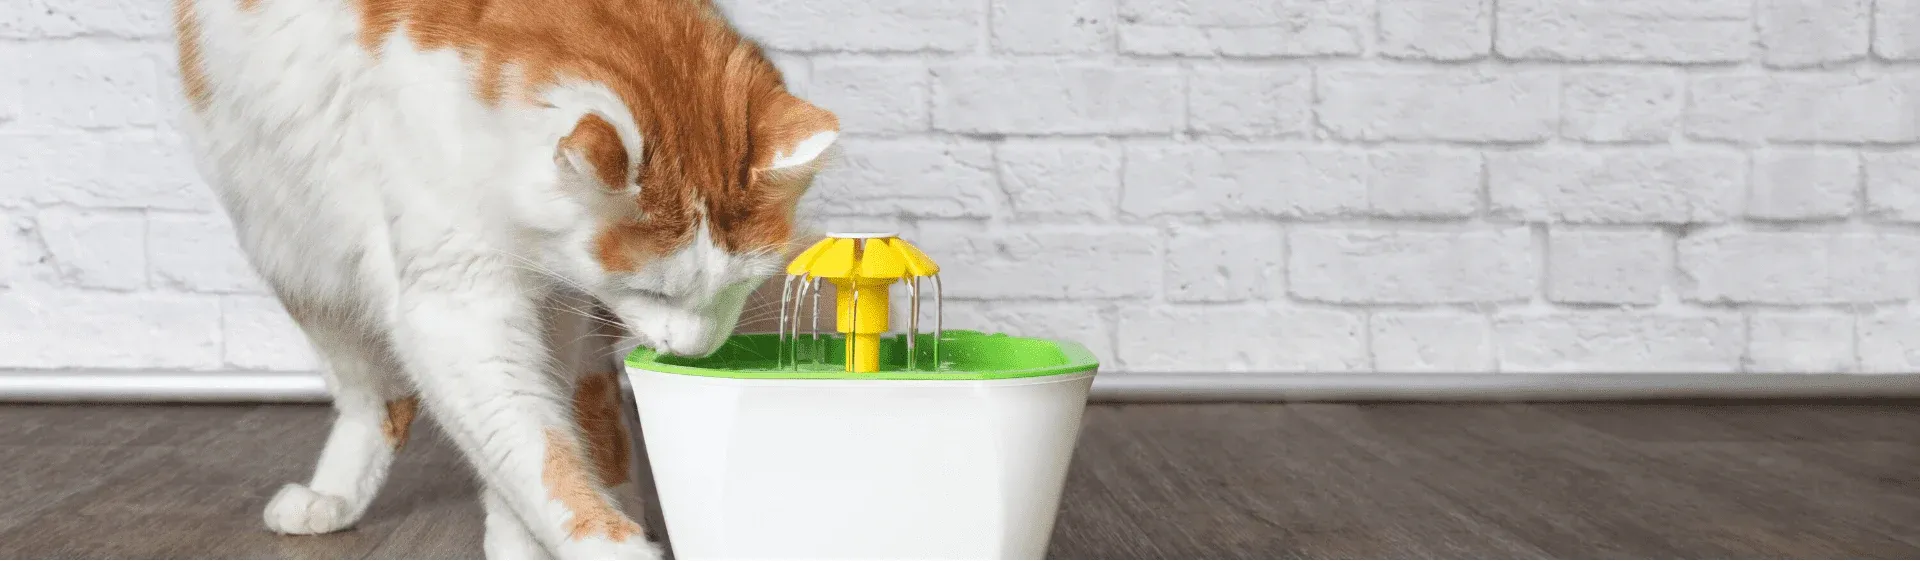 Bebedouro ou fonte para gatos: qual é o modelo ideal?